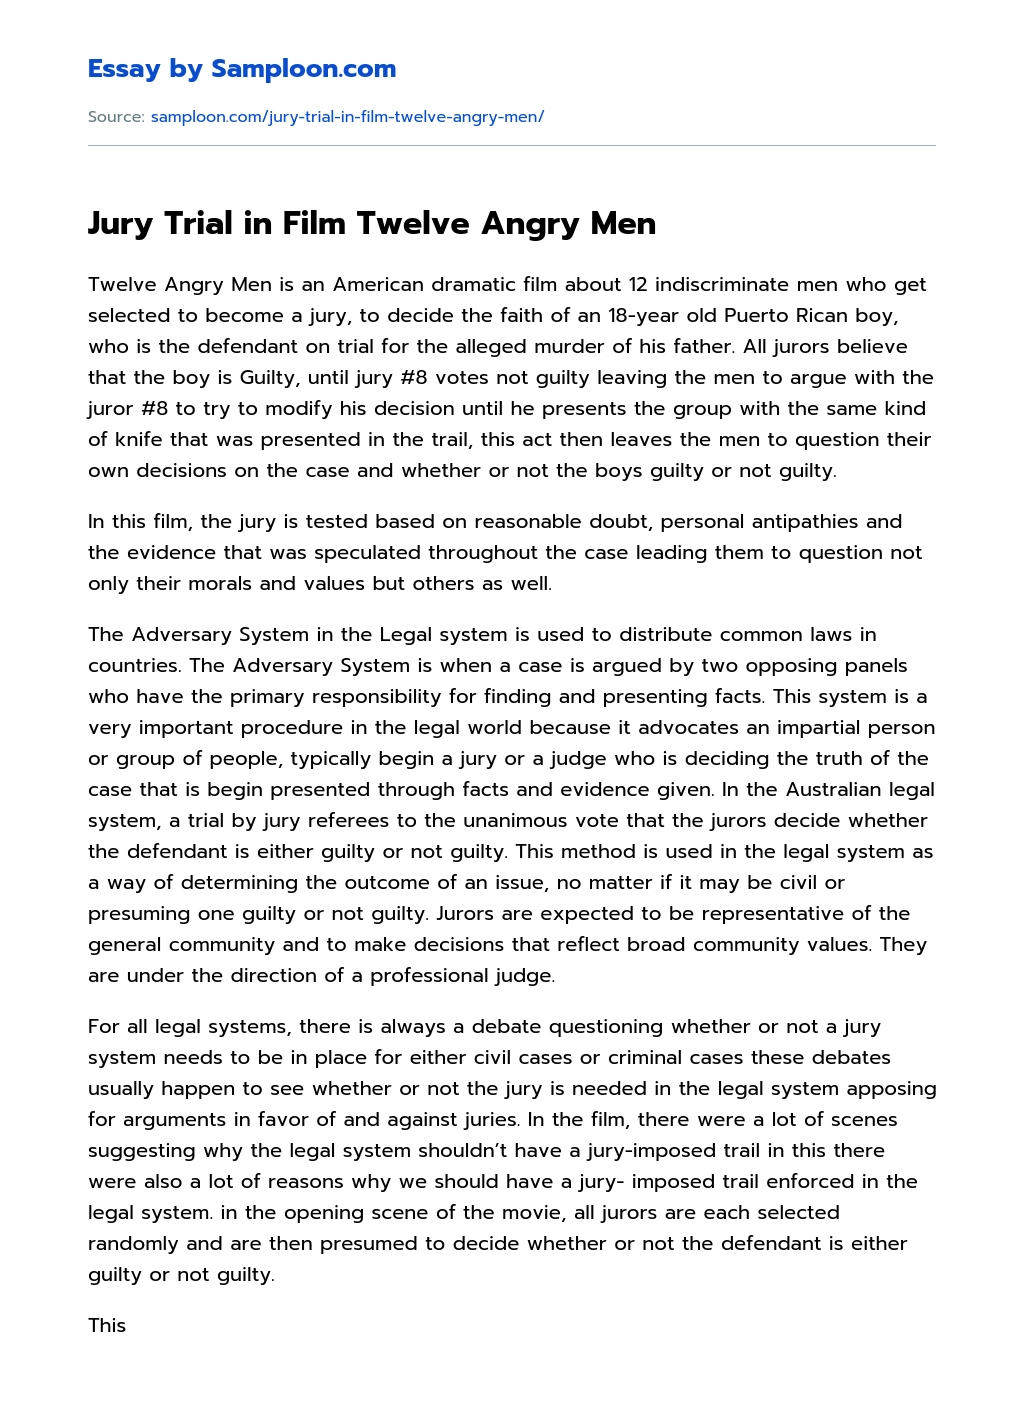 Jury Trial in Film Twelve Angry Men essay